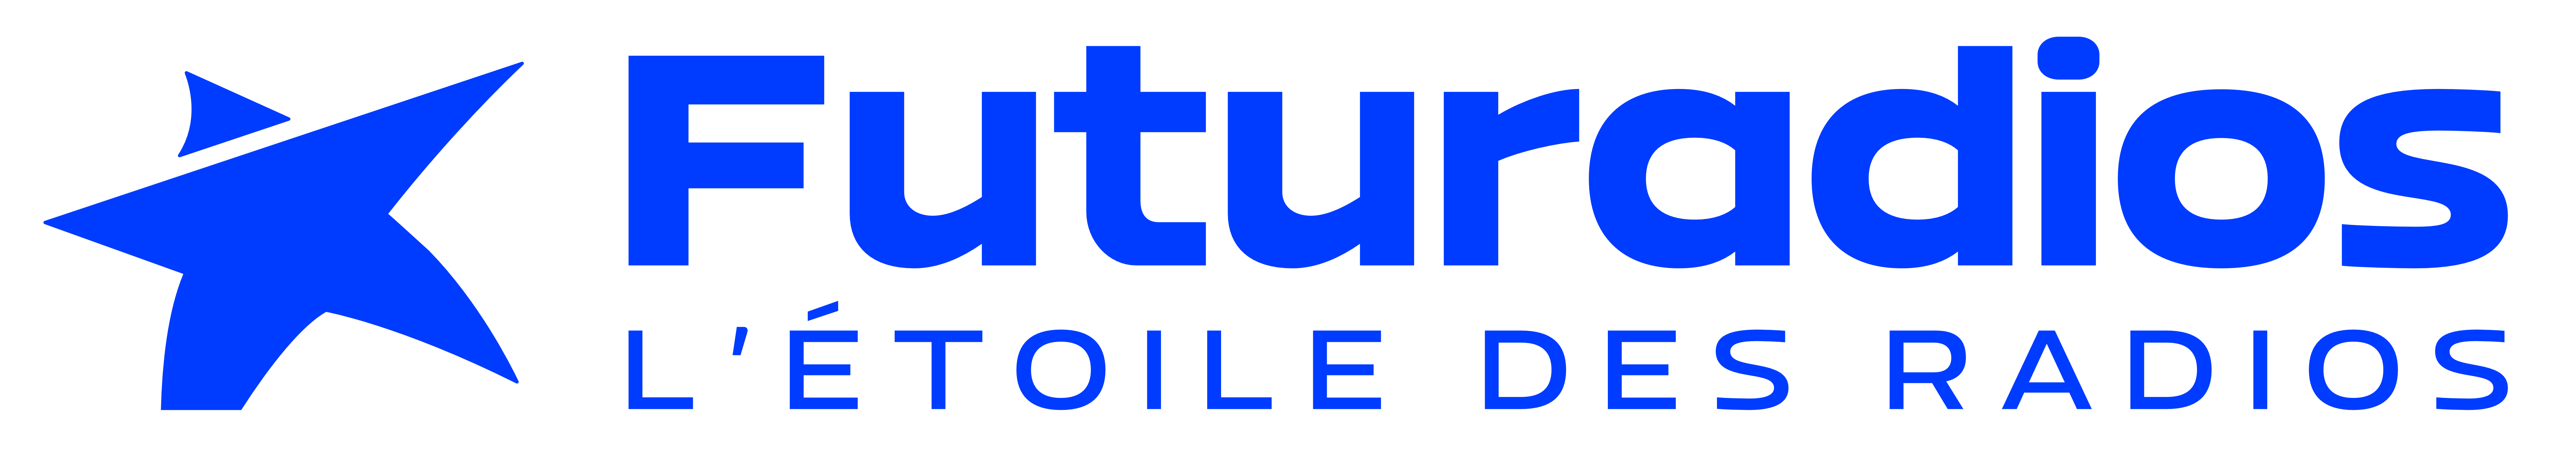 Contacter Futuradios ⋆ Futuradios logo